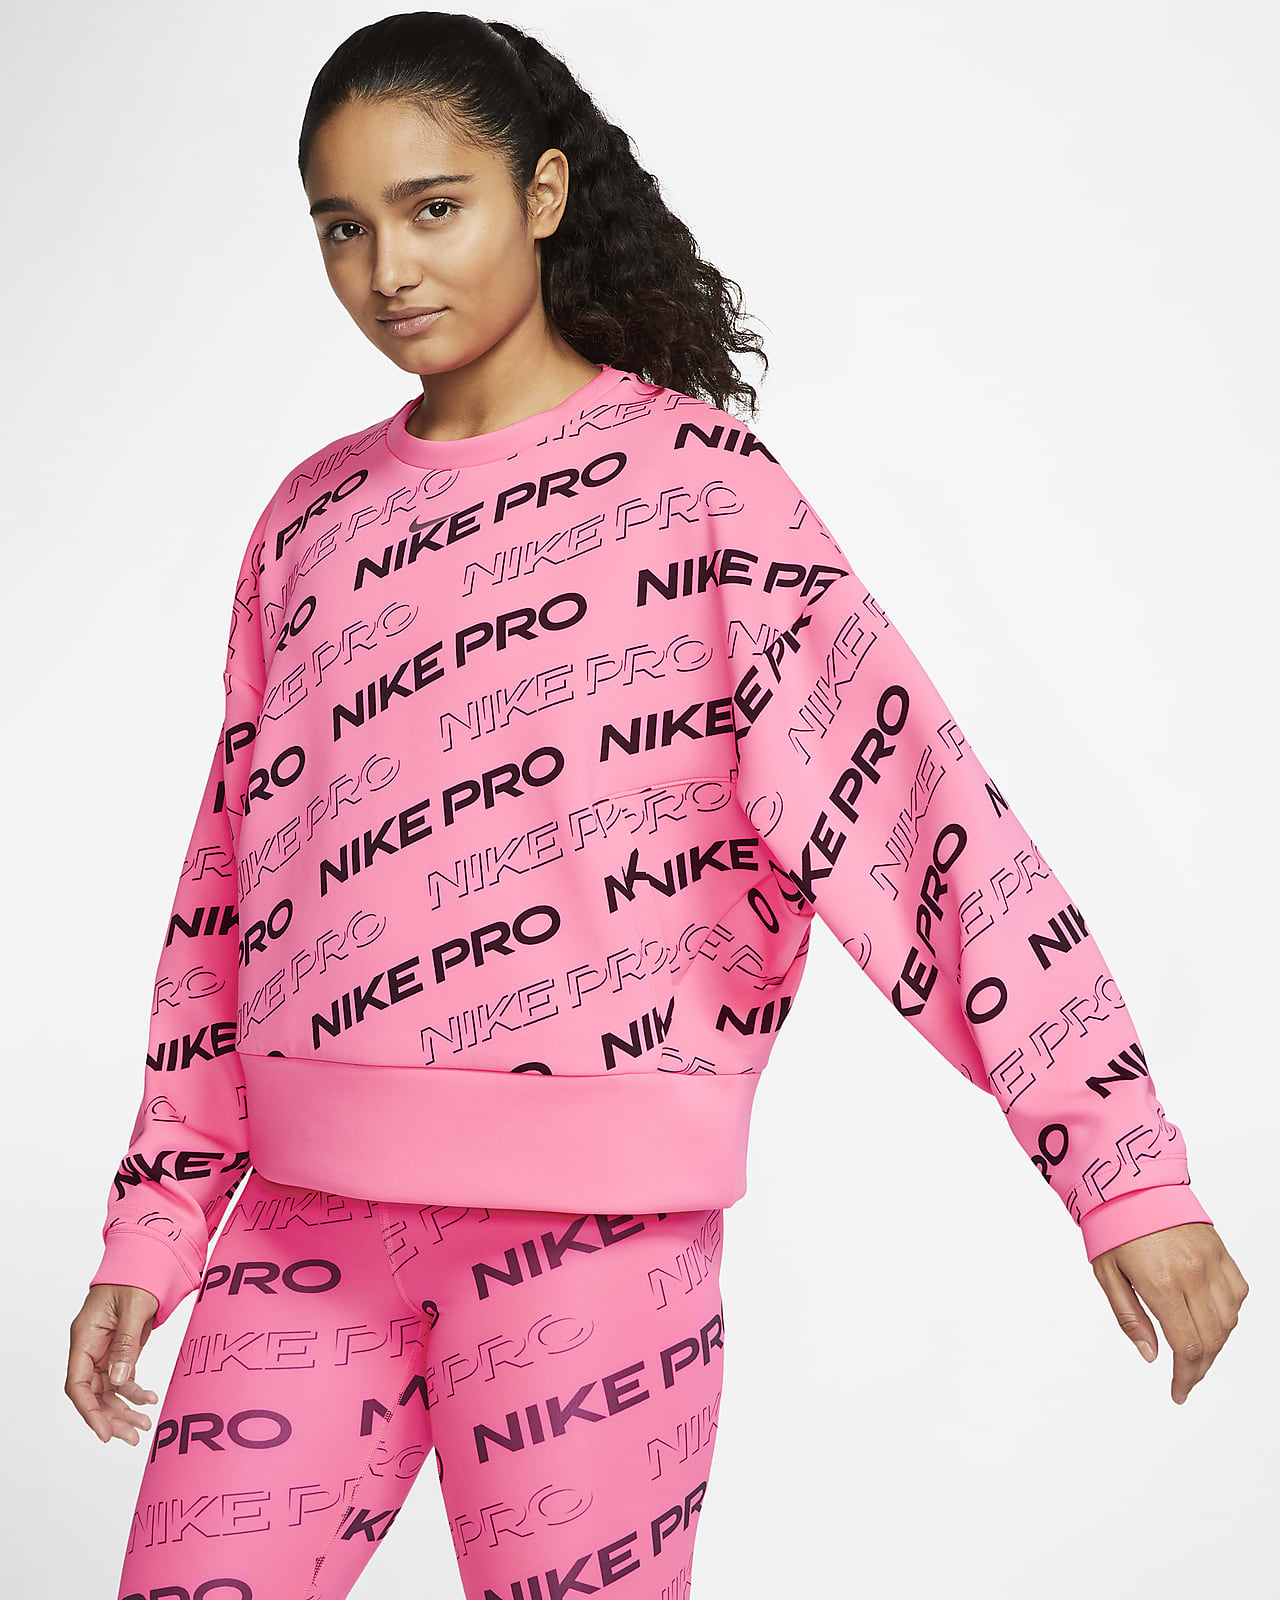 nike pro women's sweatshirt